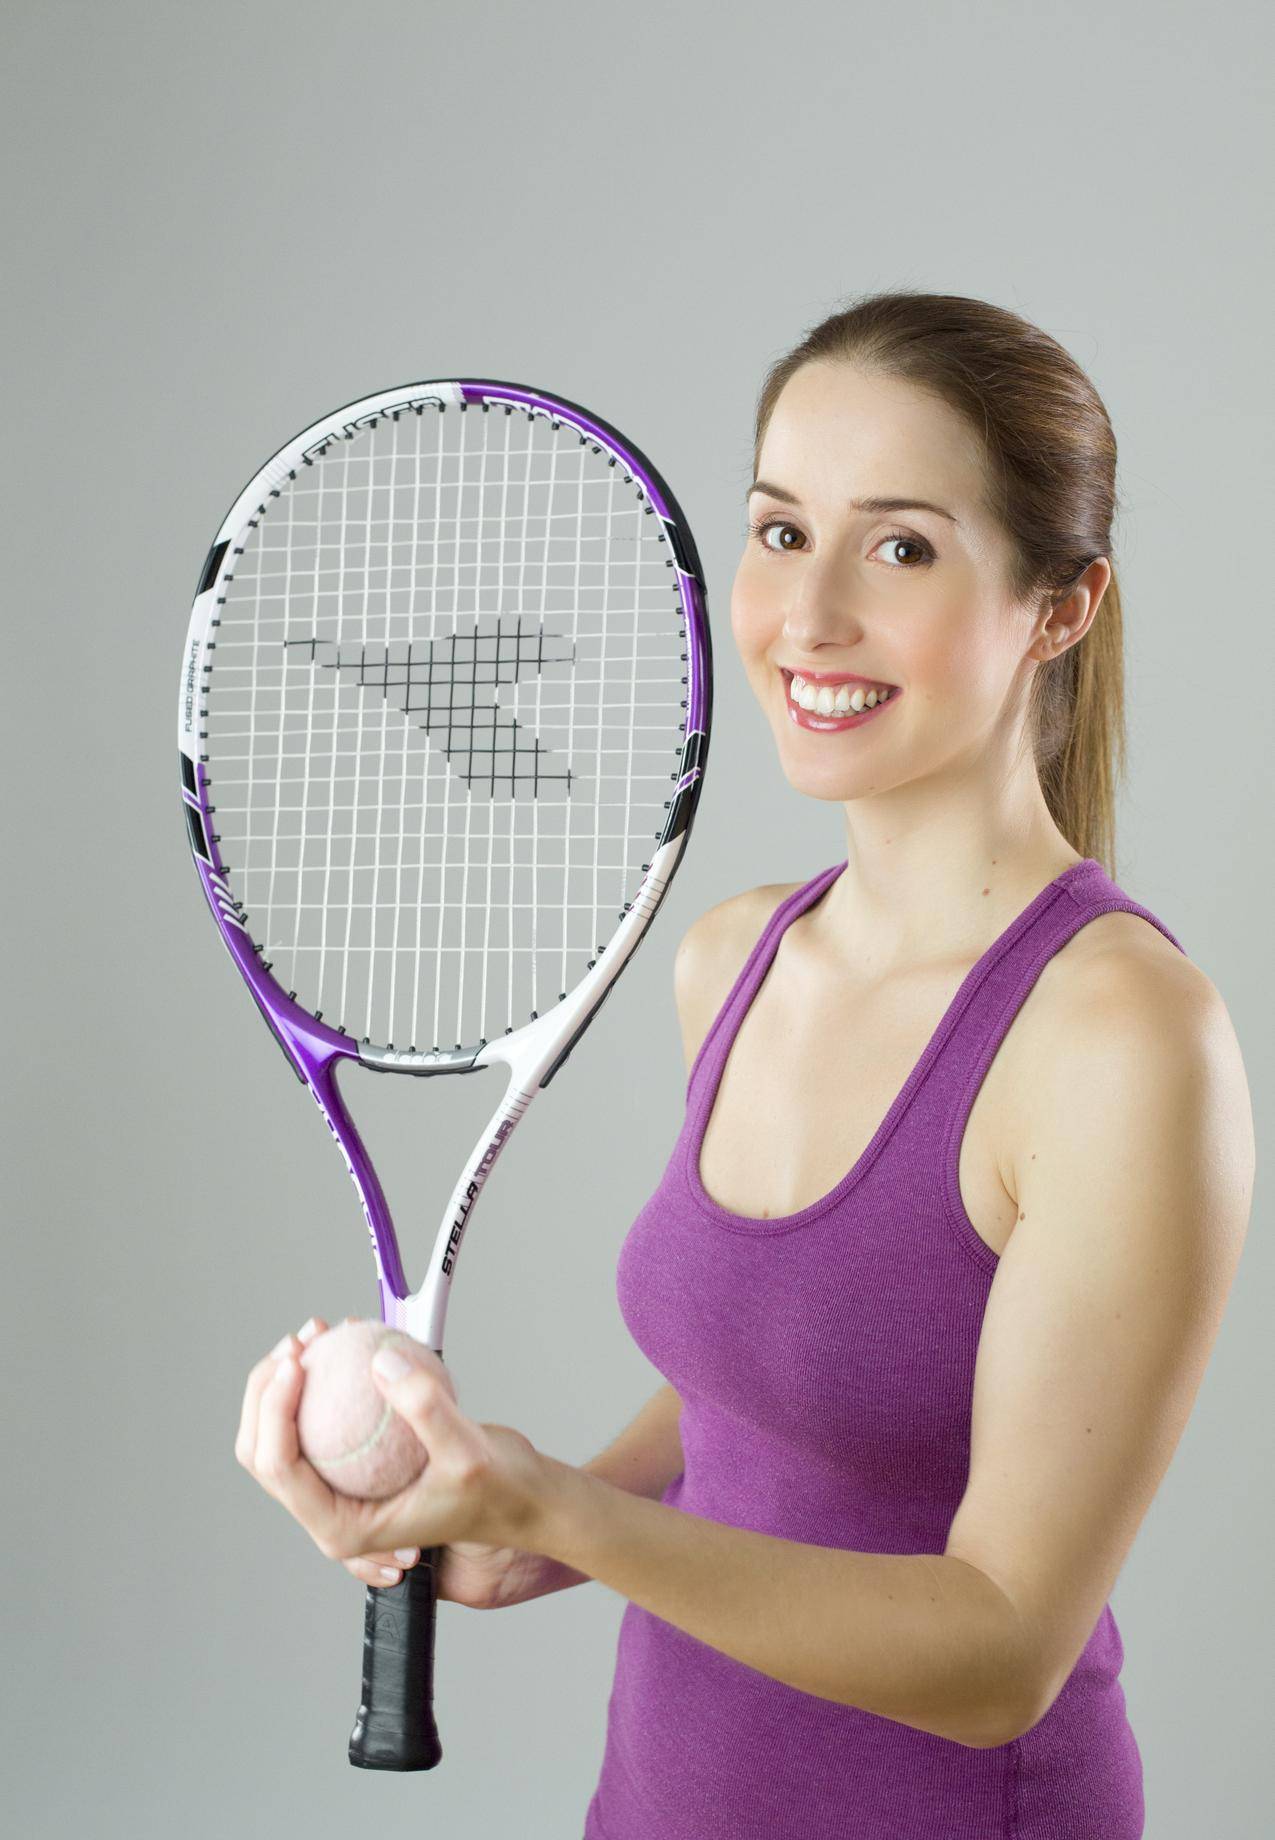 女子身穿紫罐顶夹紫白球拍和草地网球